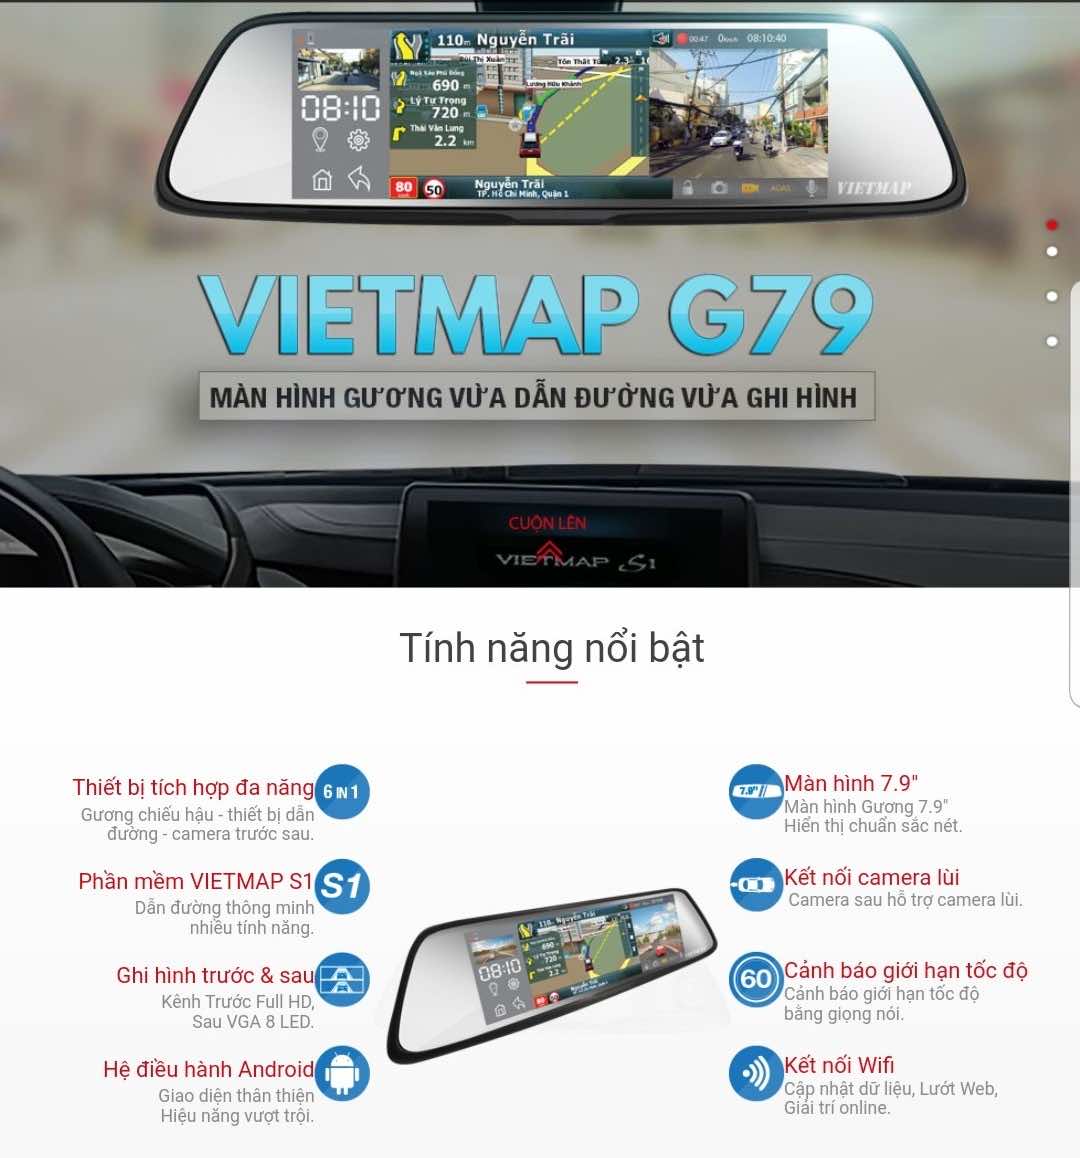 CAMERA HÀNH TRÌNH VIETMAP G79 - AP Car Care.vn